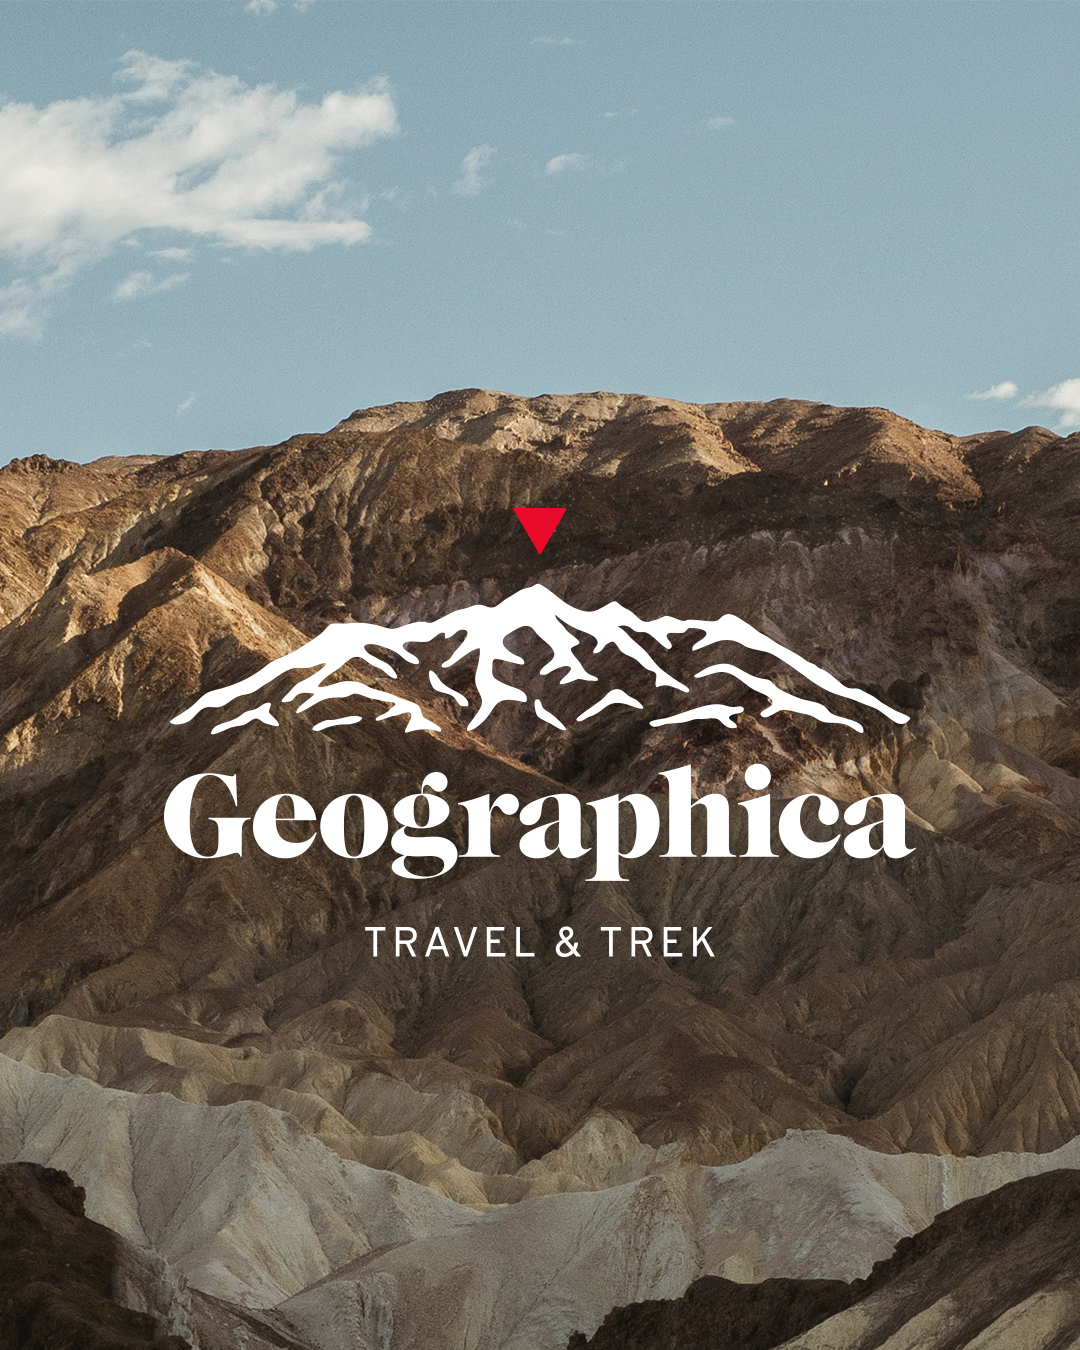 Rediseño de identidad corporativa - Branding agencia de viajes - Estudio de diseño en Valencia Pixelarte